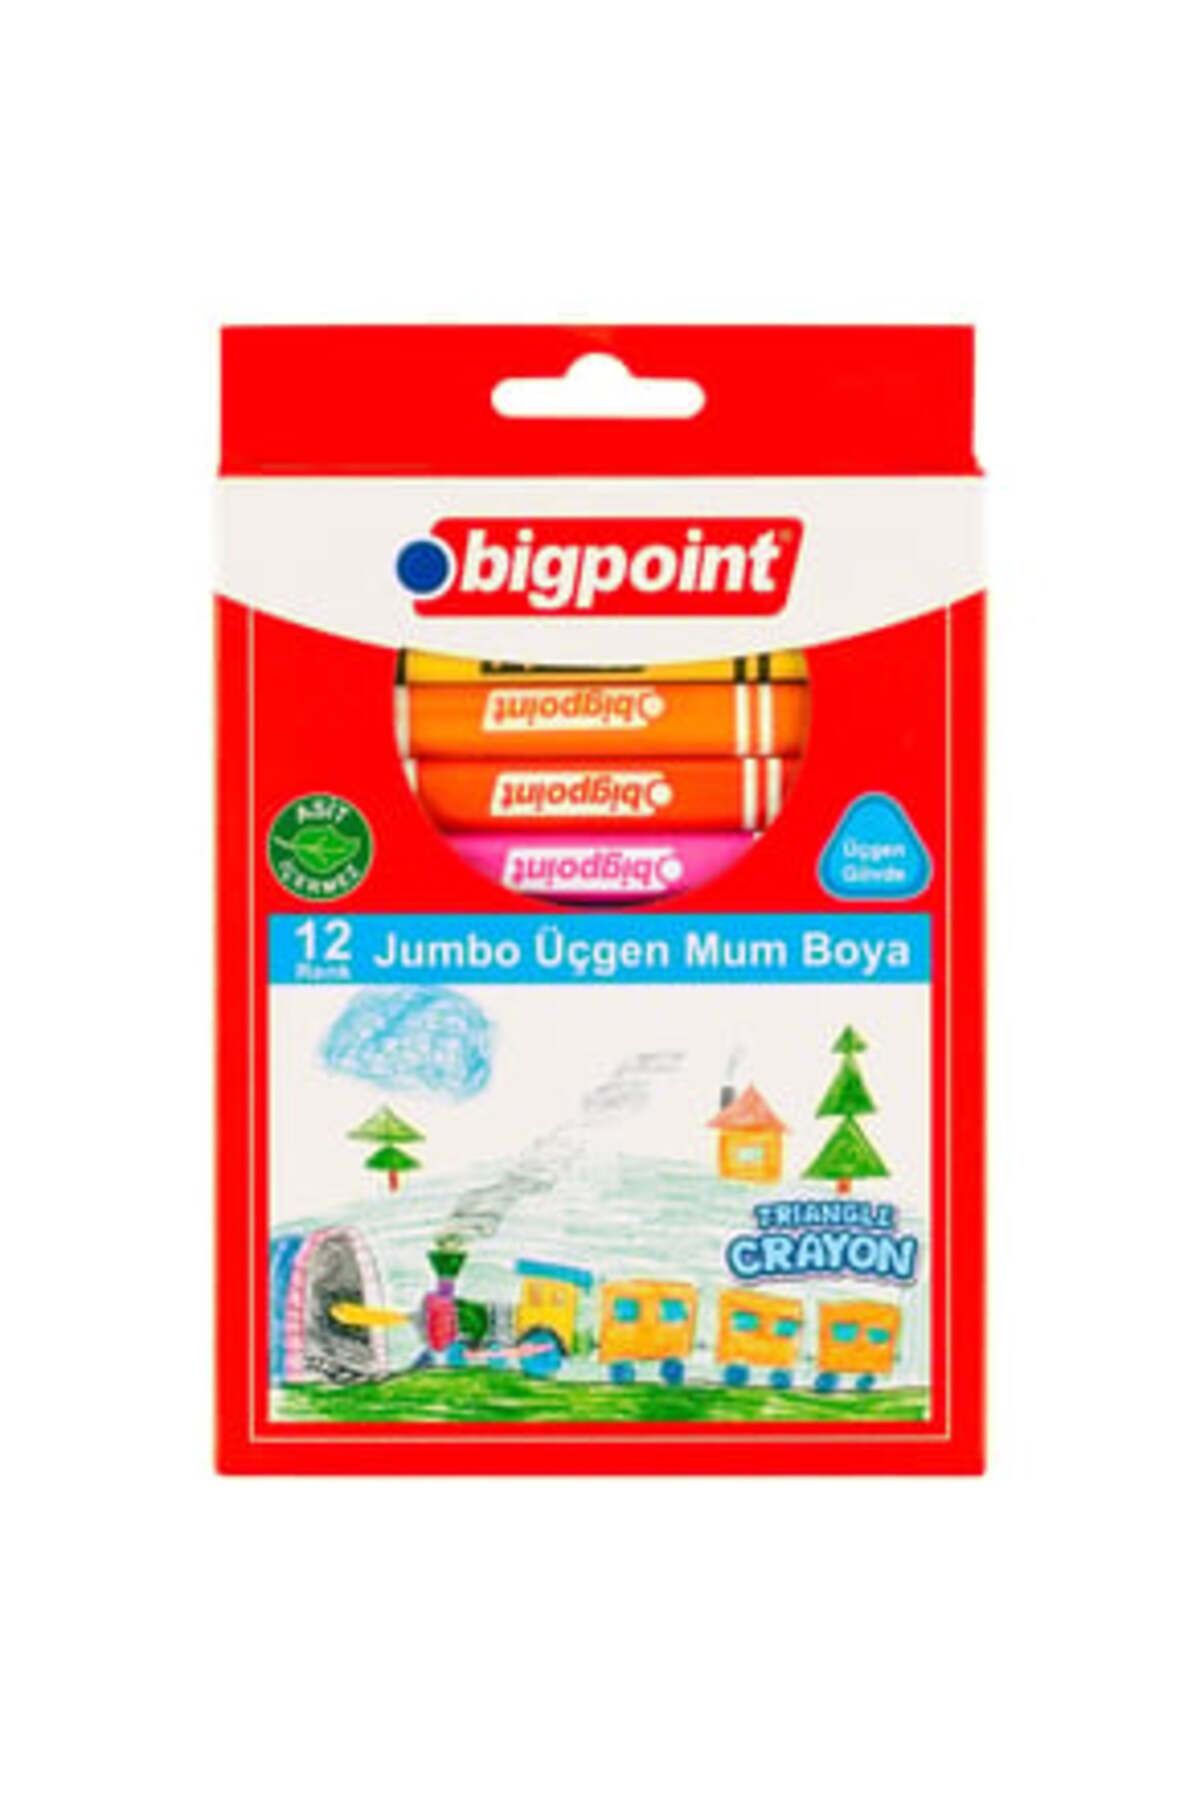 Bigpoint ( KALEMTIRAŞ HEDİYE ) Bigpoint Jumbo Üçgen Mum Boya 12 Renk ( 2 ADET )